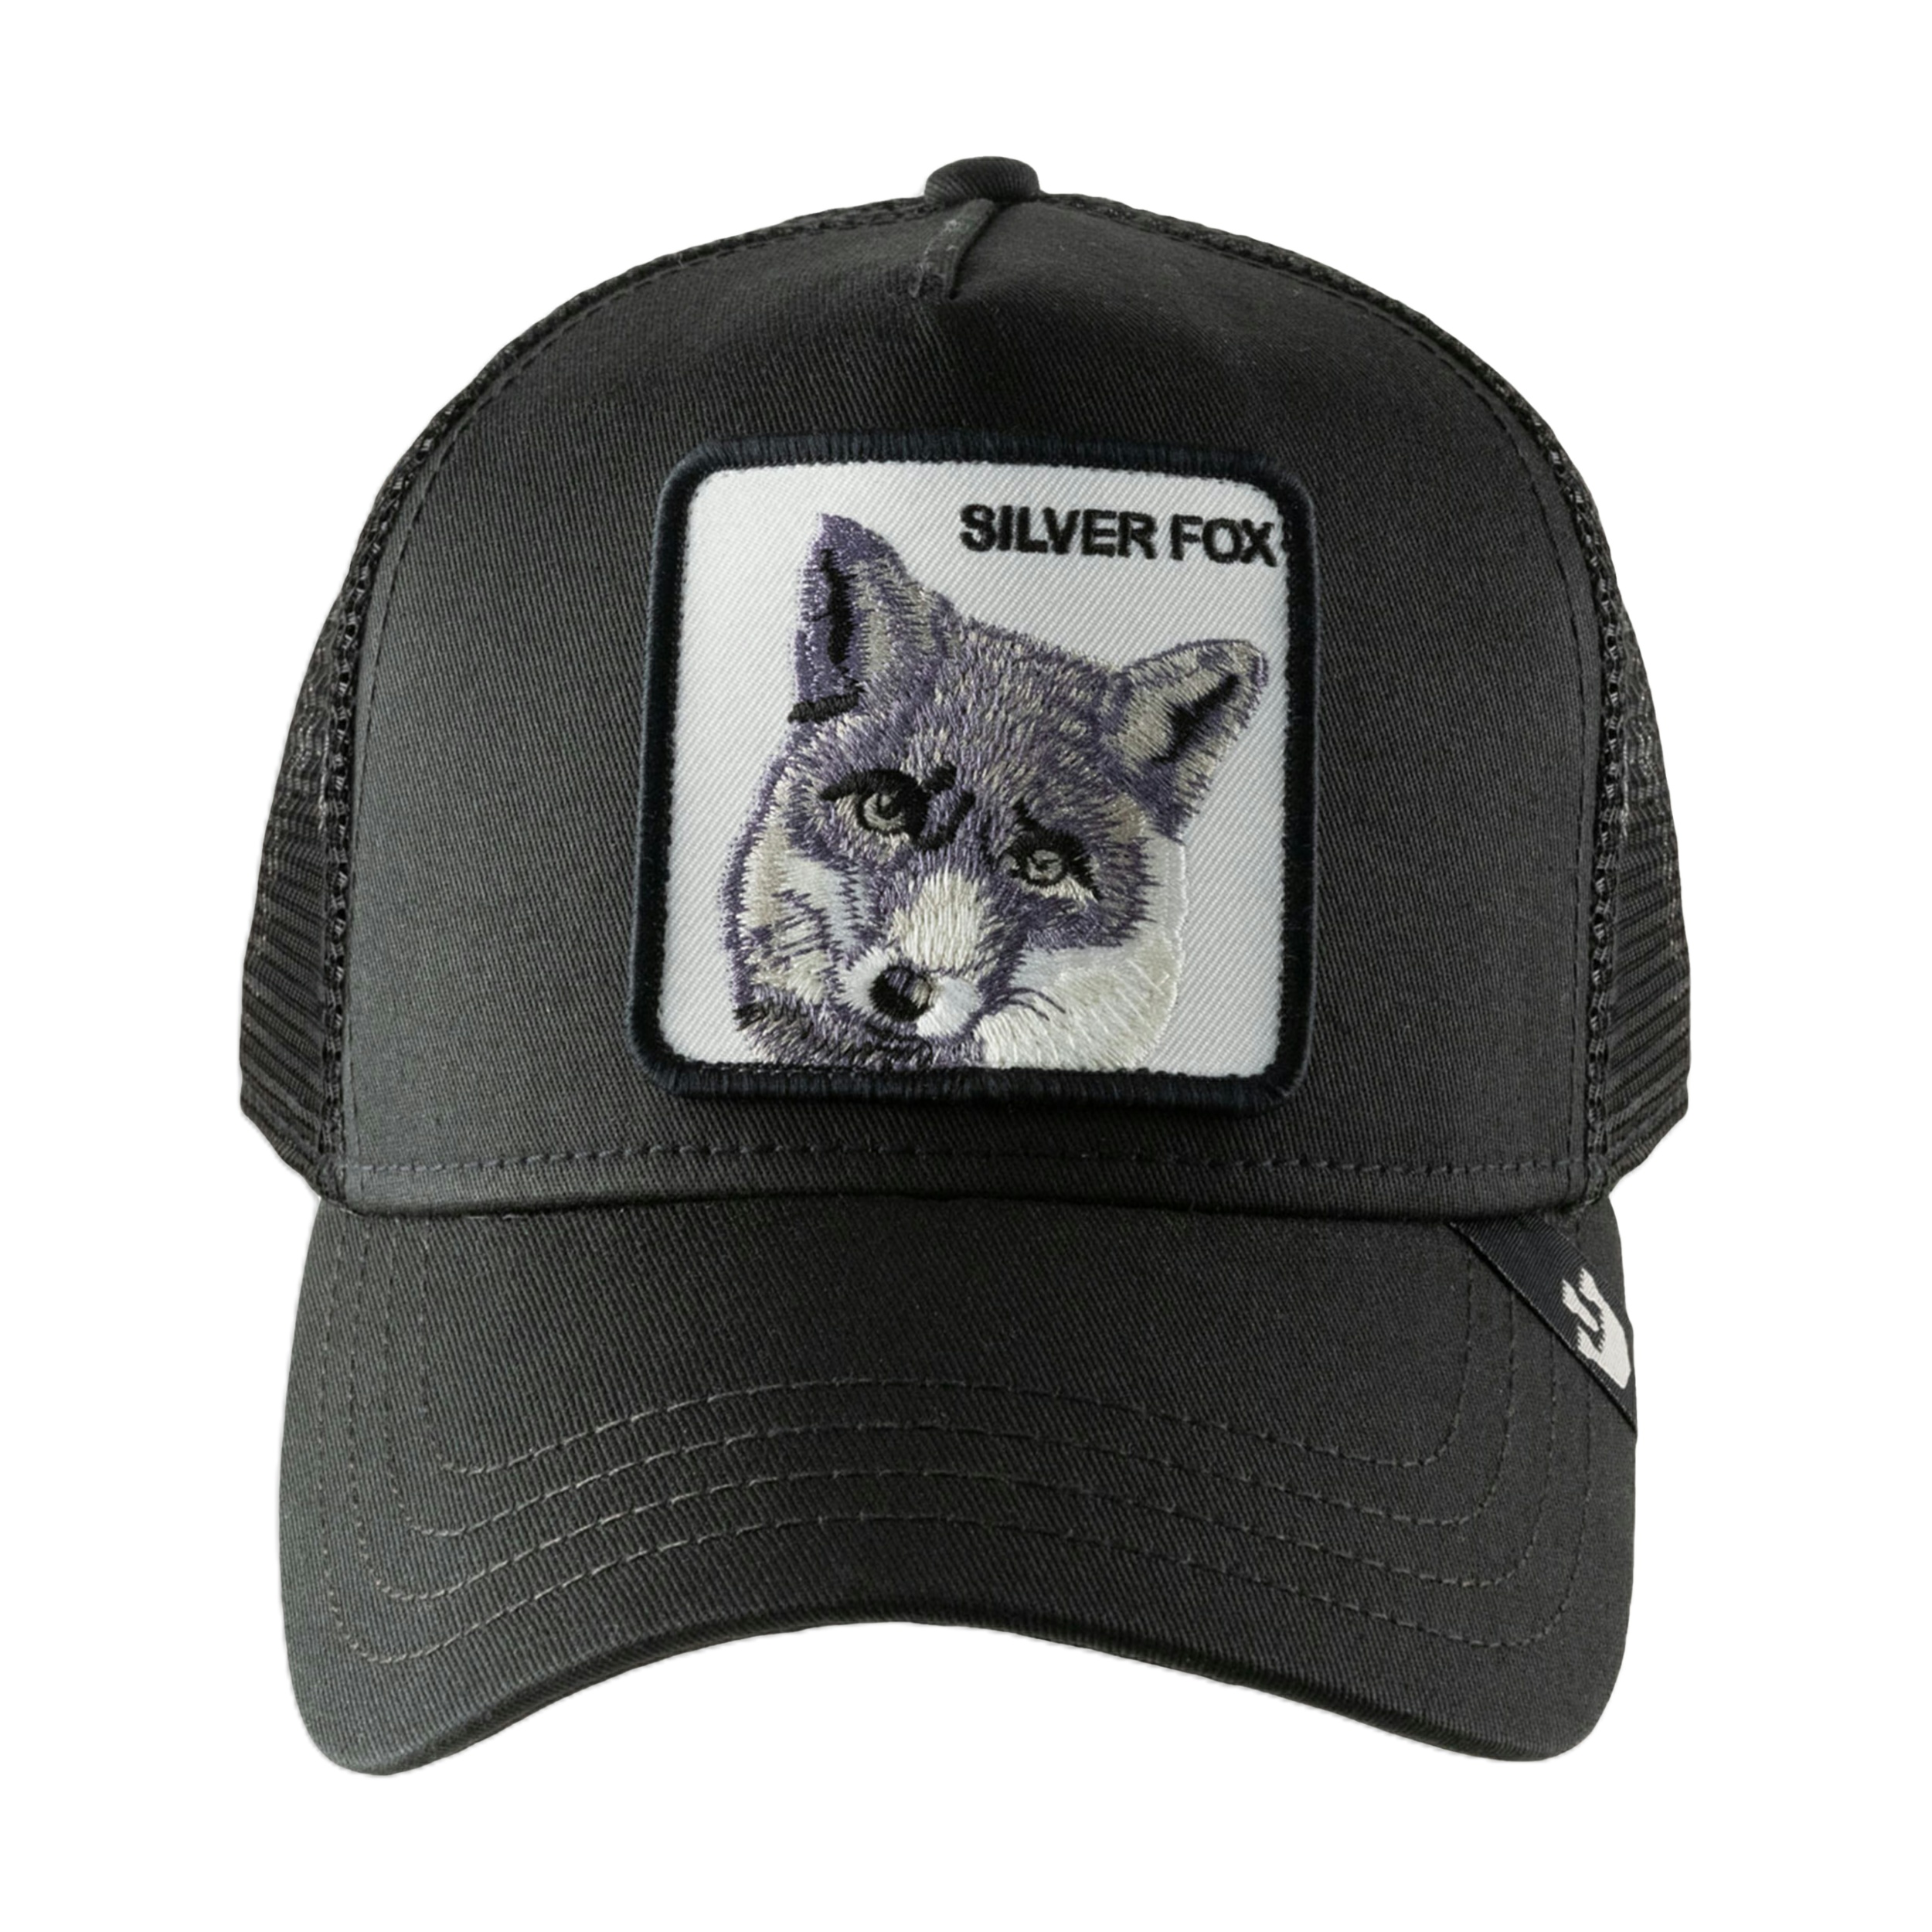 نکته خرید - قیمت روز کلاه کپ گورین براز مدل THE SILVER FOX خرید